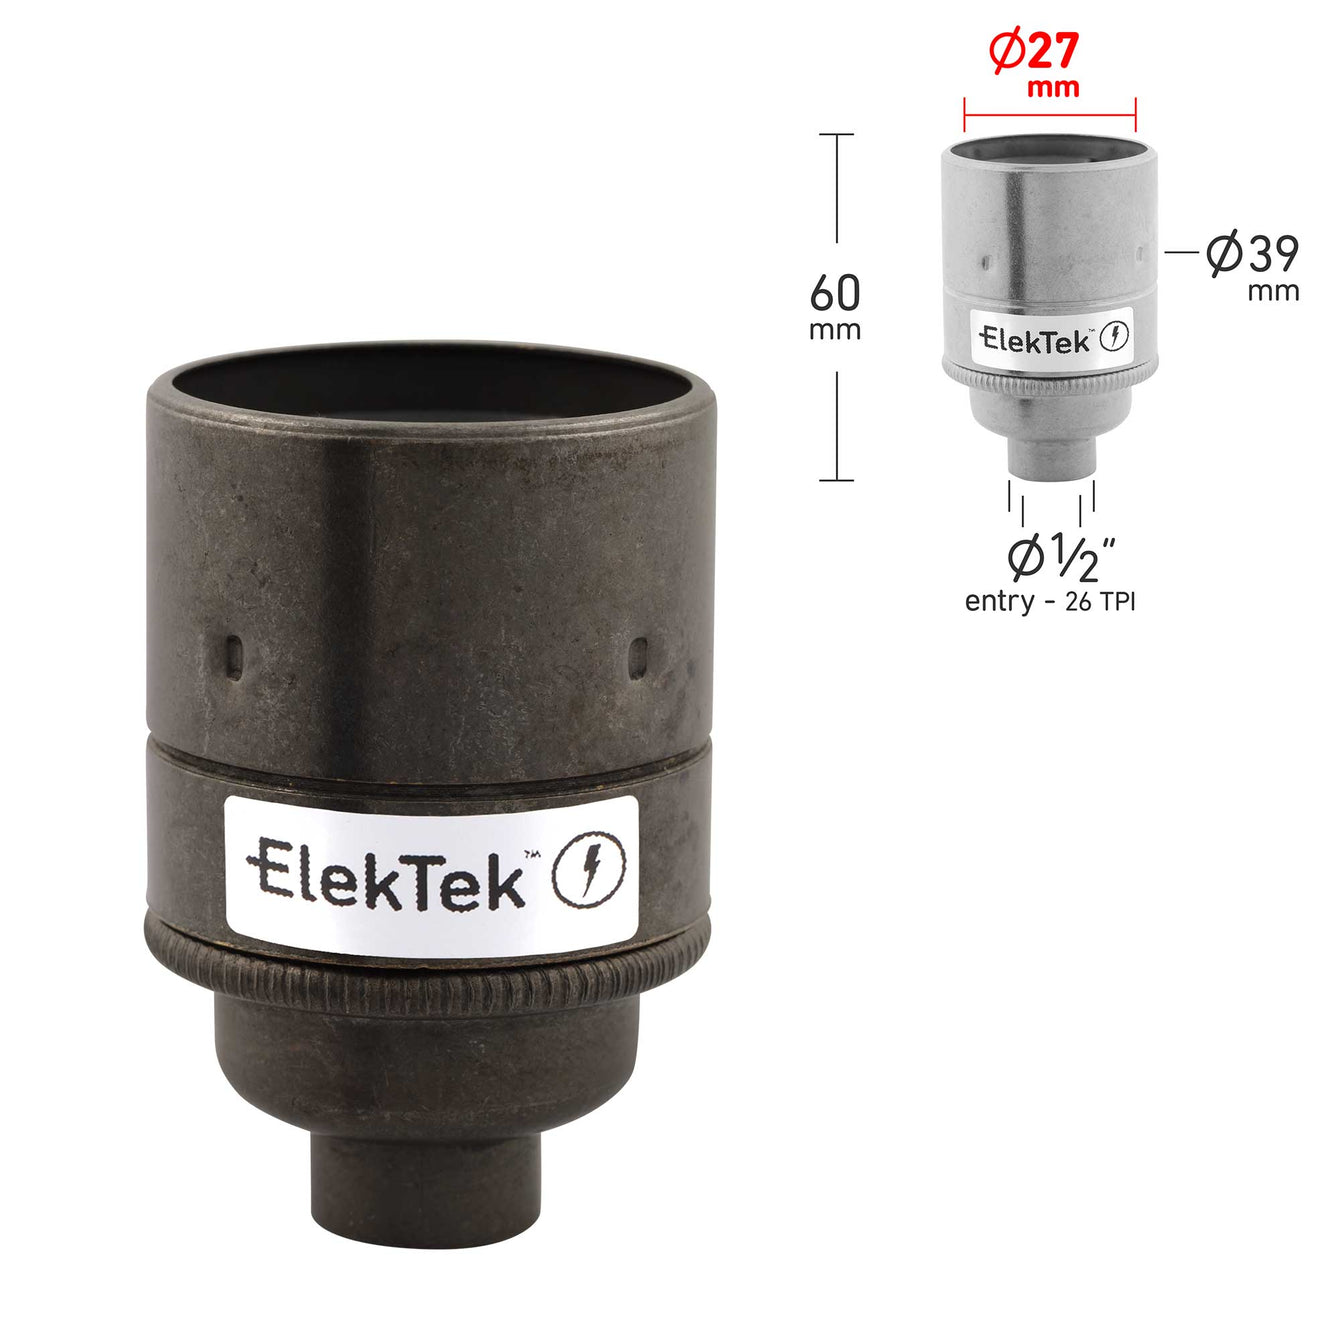 ElekTek ES Edison Screw E27 Lamp Holder Plain Skirt 10mm or Half Inch Entry Ideal for Vintage Filament Bulbs Brass - Buy It Better 